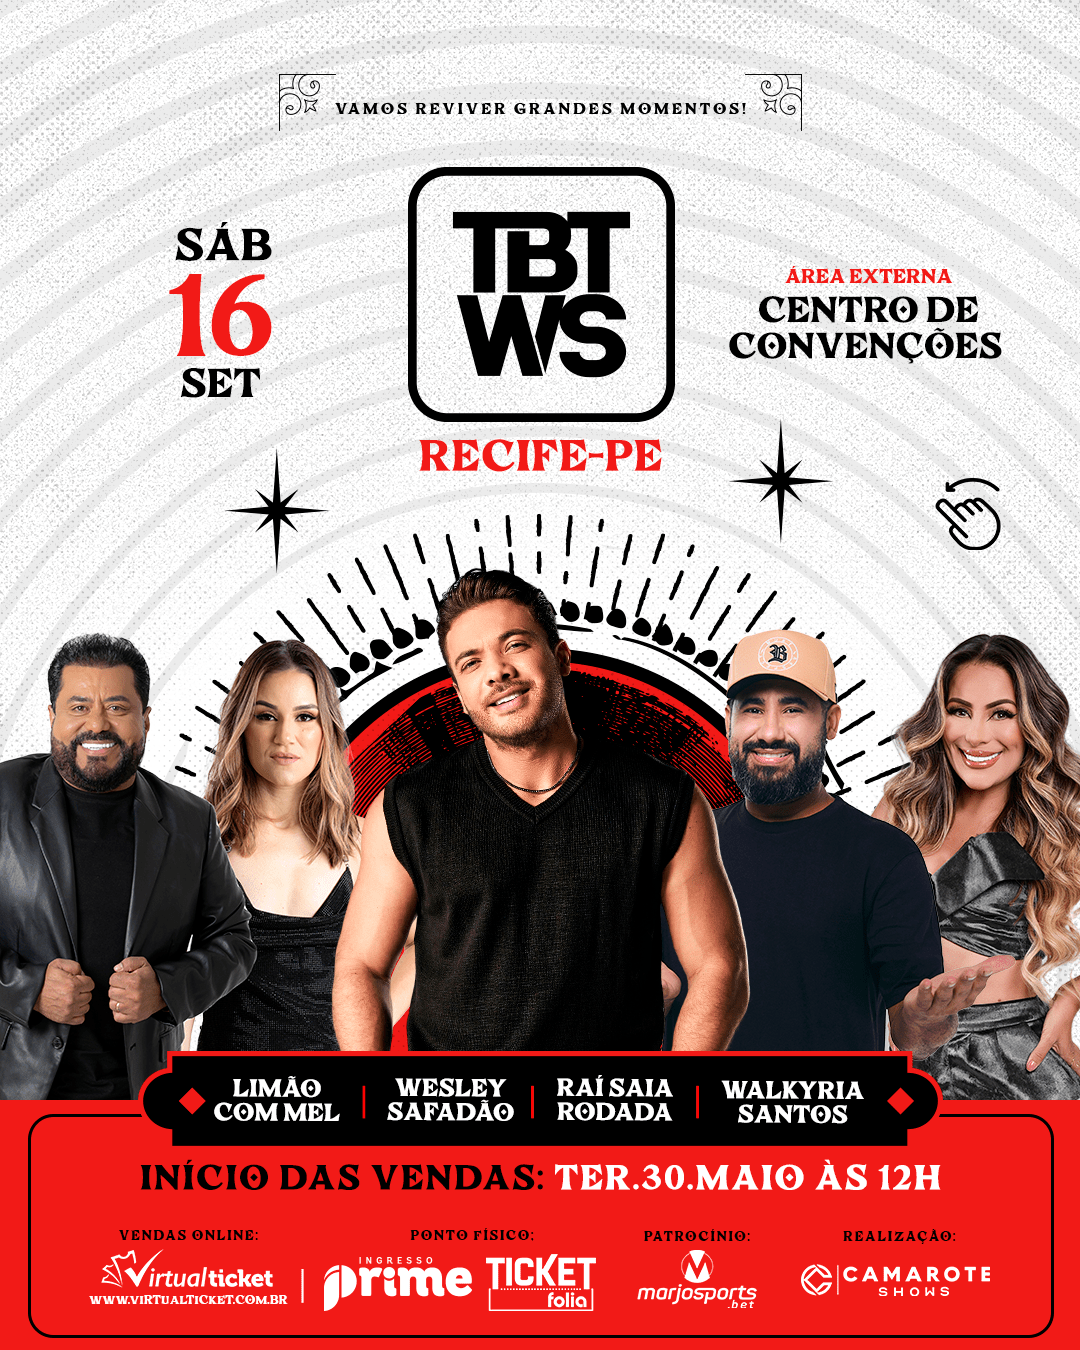 TBT WS confirma edição no Recife; venda de ingressos liberadas